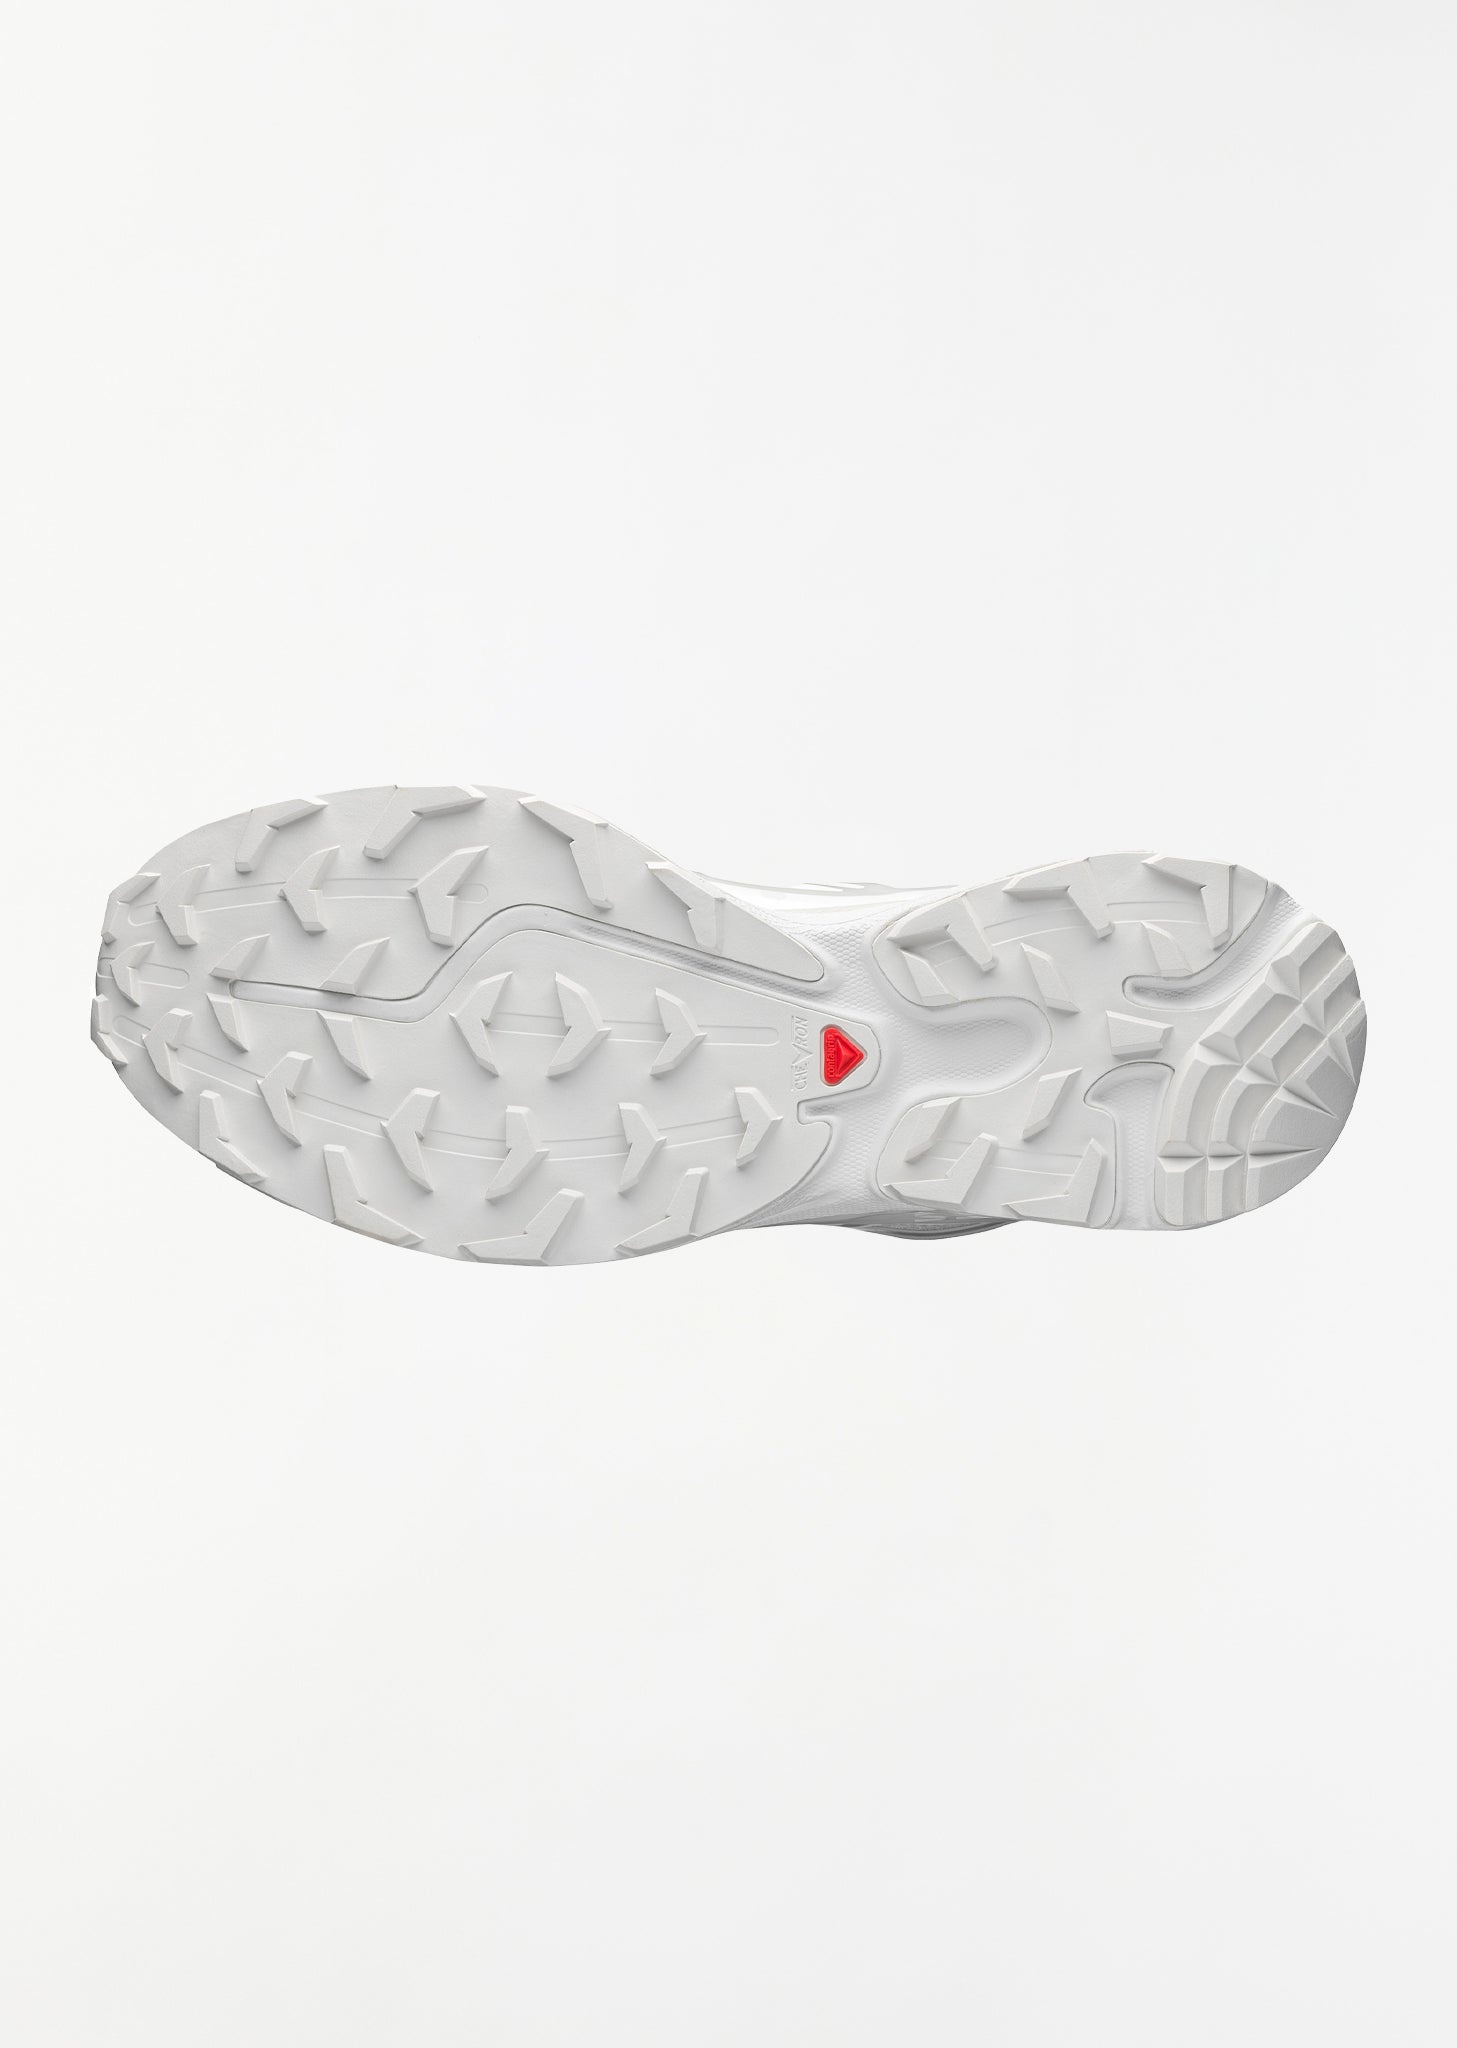 XT-6 — White/White/Lunar Rock Sneakers - 5